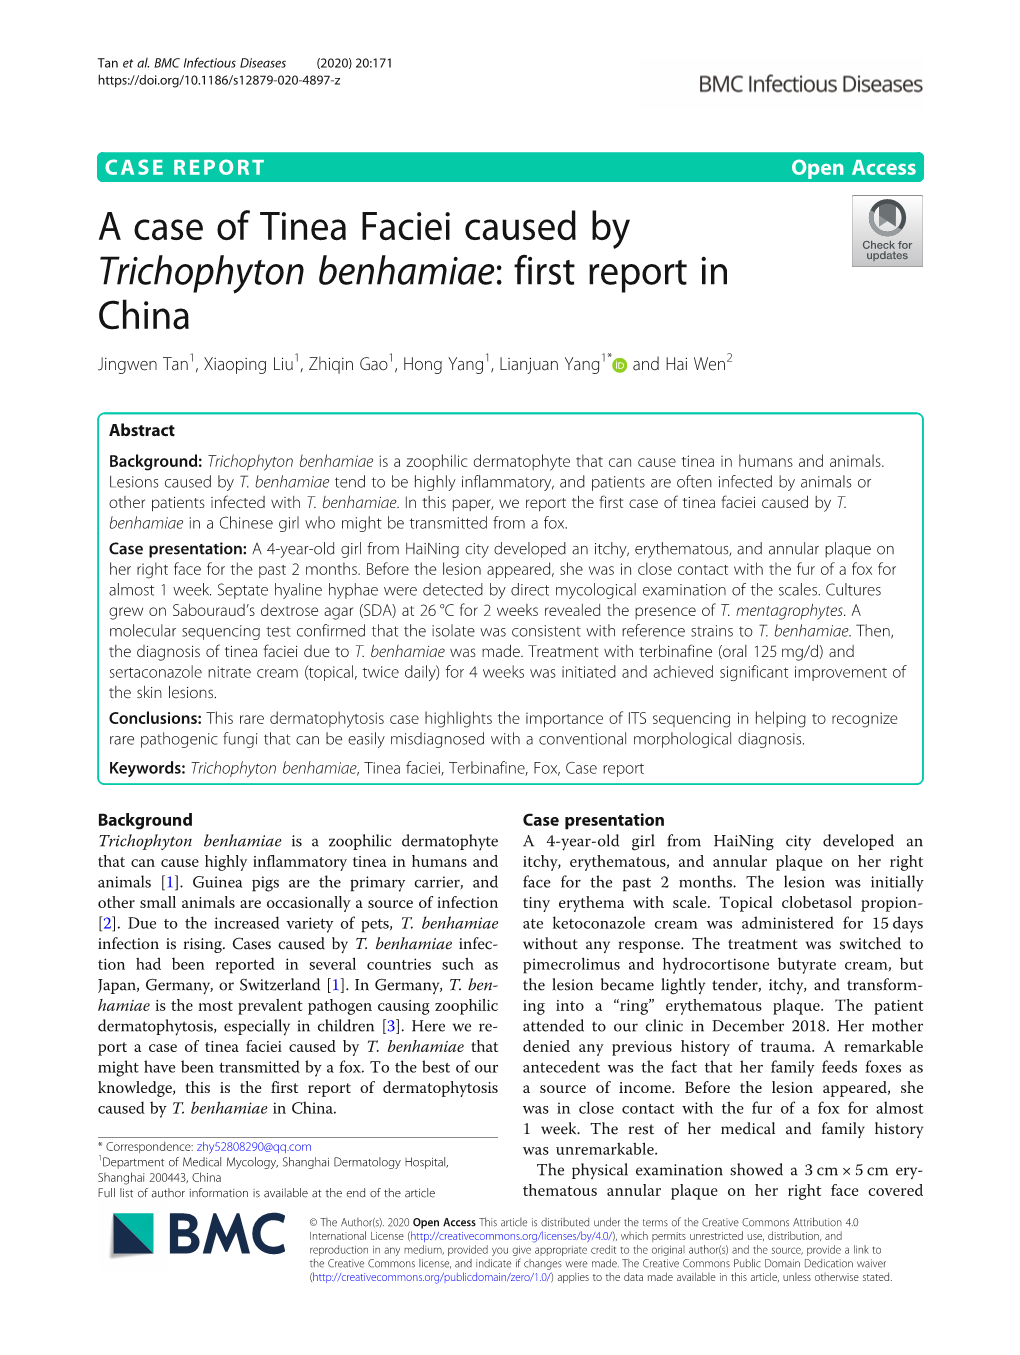 A Case of Tinea Faciei Caused by Trichophyton Benhamiae: First Report in China Jingwen Tan1, Xiaoping Liu1, Zhiqin Gao1, Hong Yang1, Lianjuan Yang1* and Hai Wen2